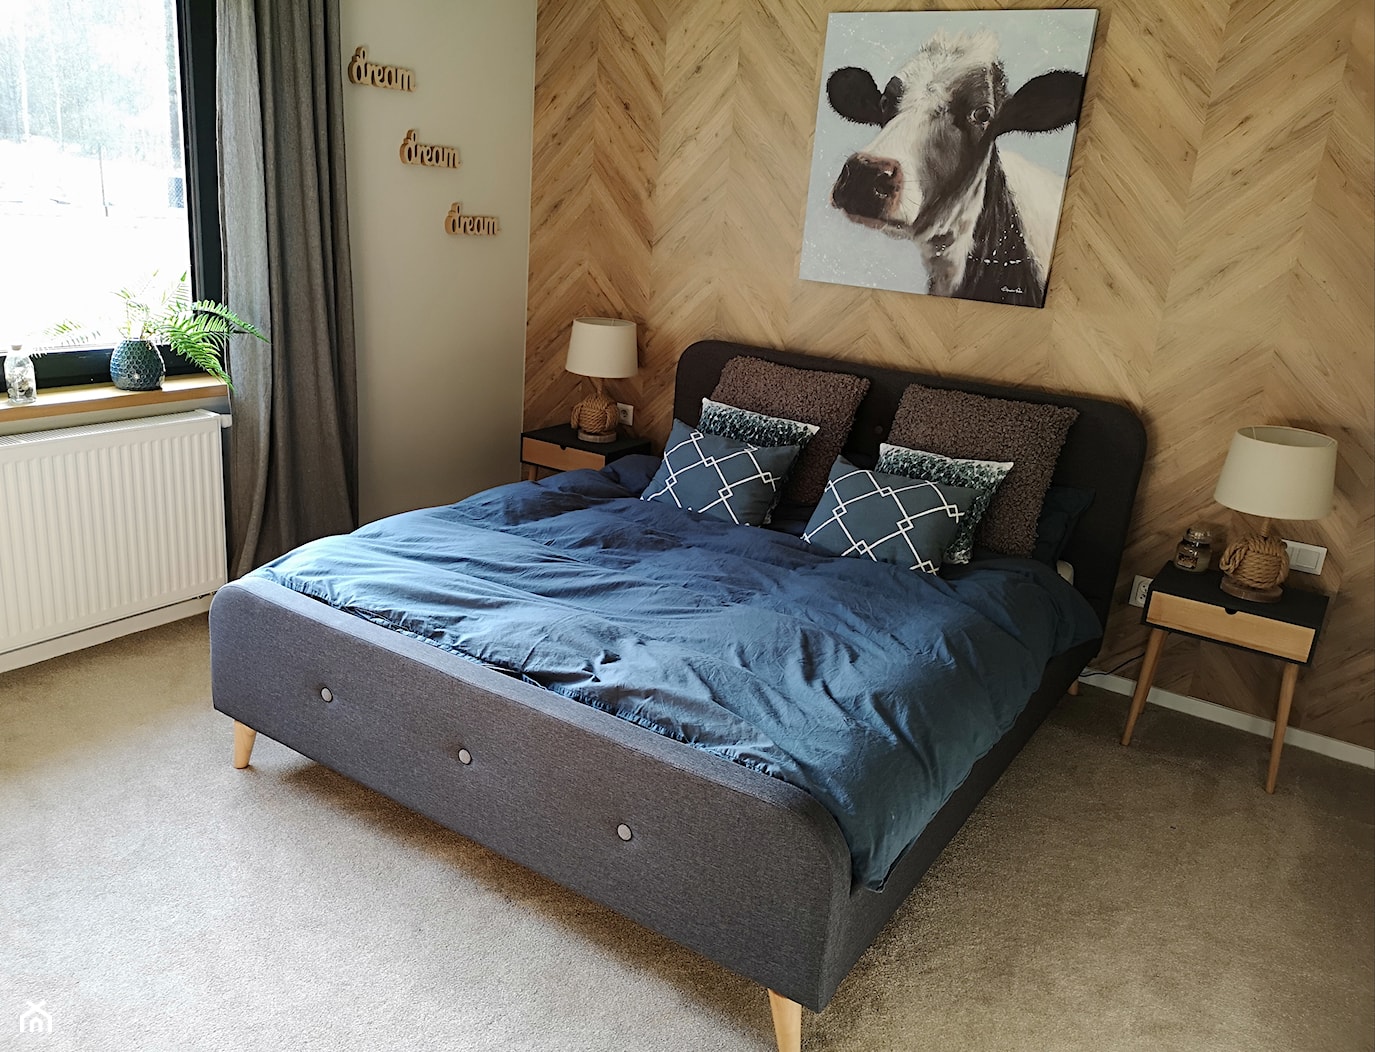 przytulna sypialnia w stylu rustykalnym - zdjęcie od itsmargaret - Homebook